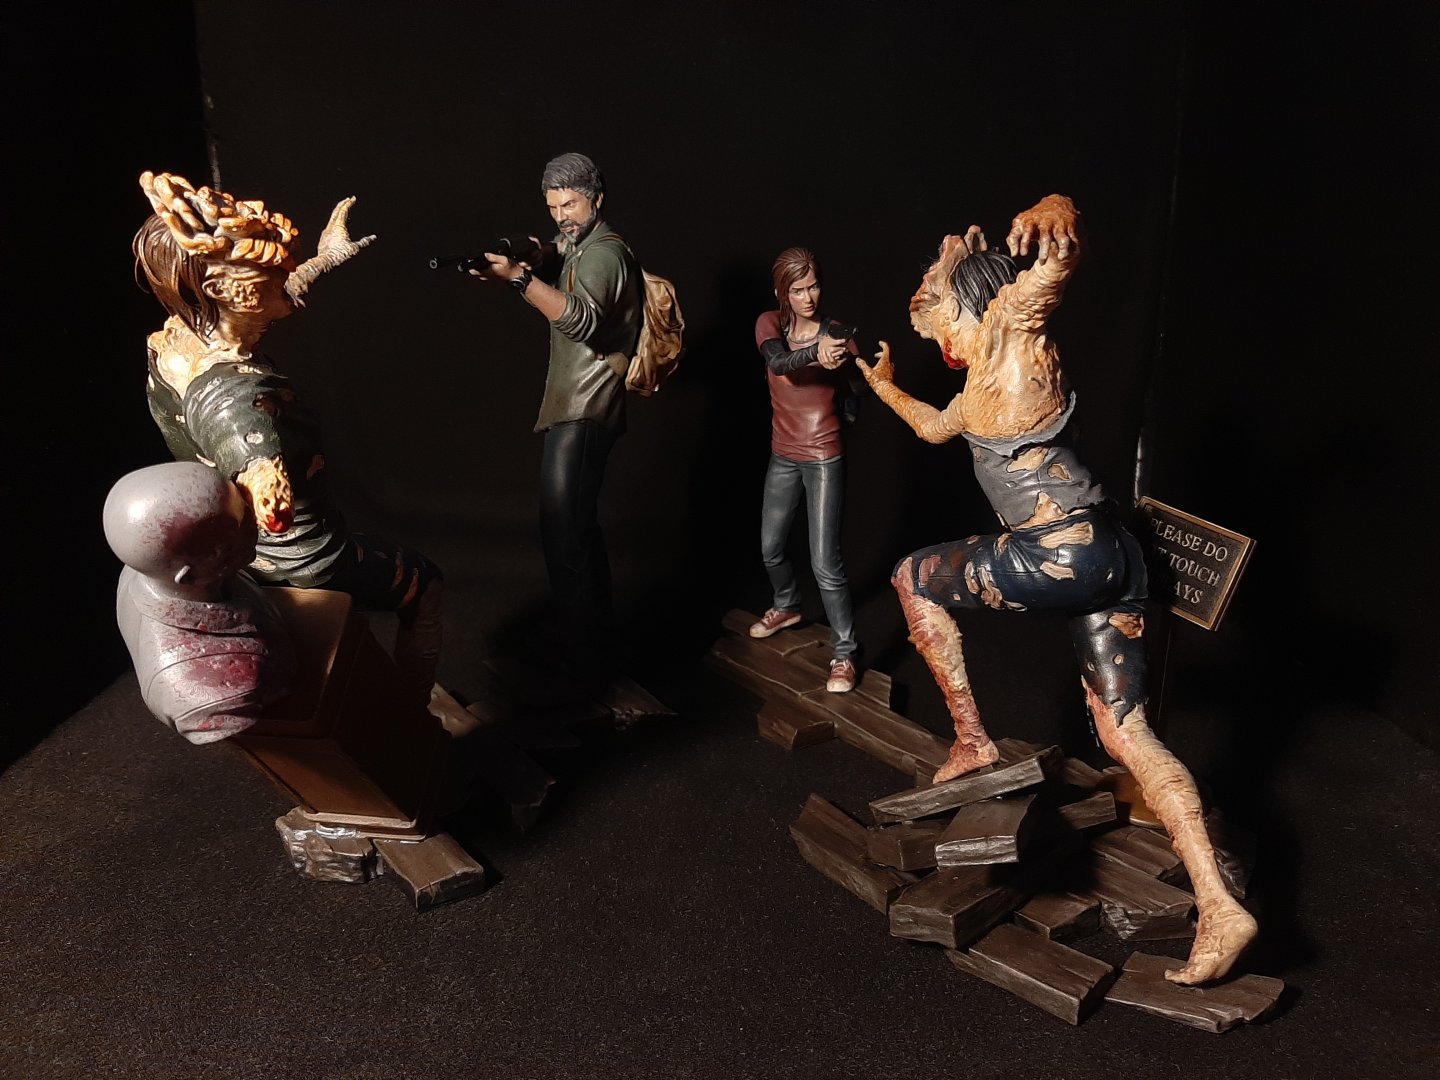 Satılık: Last of Us Joel ve Ellie figür (Müze sahnesi) | Technopat Sosyal